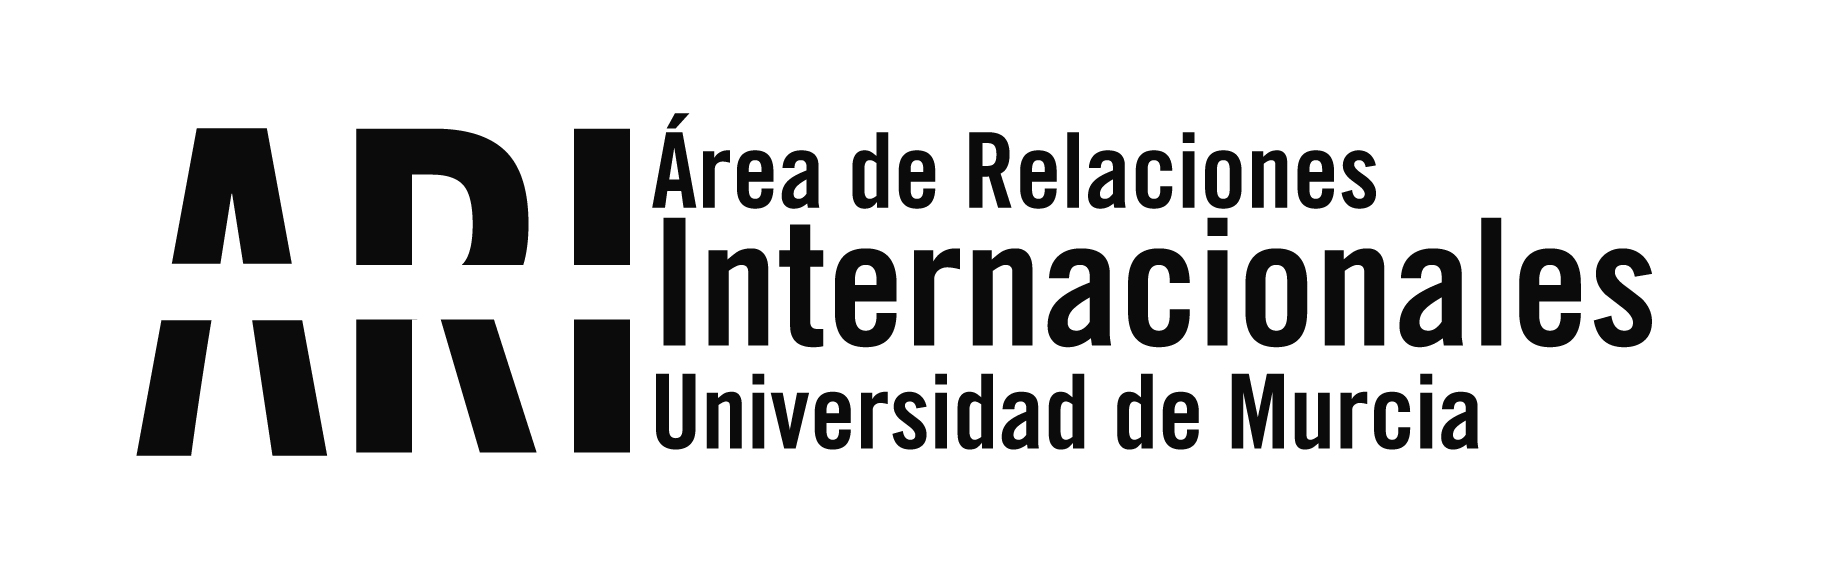 Bienvenida Universitaria 2016 - Área de Relaciones Internacionales